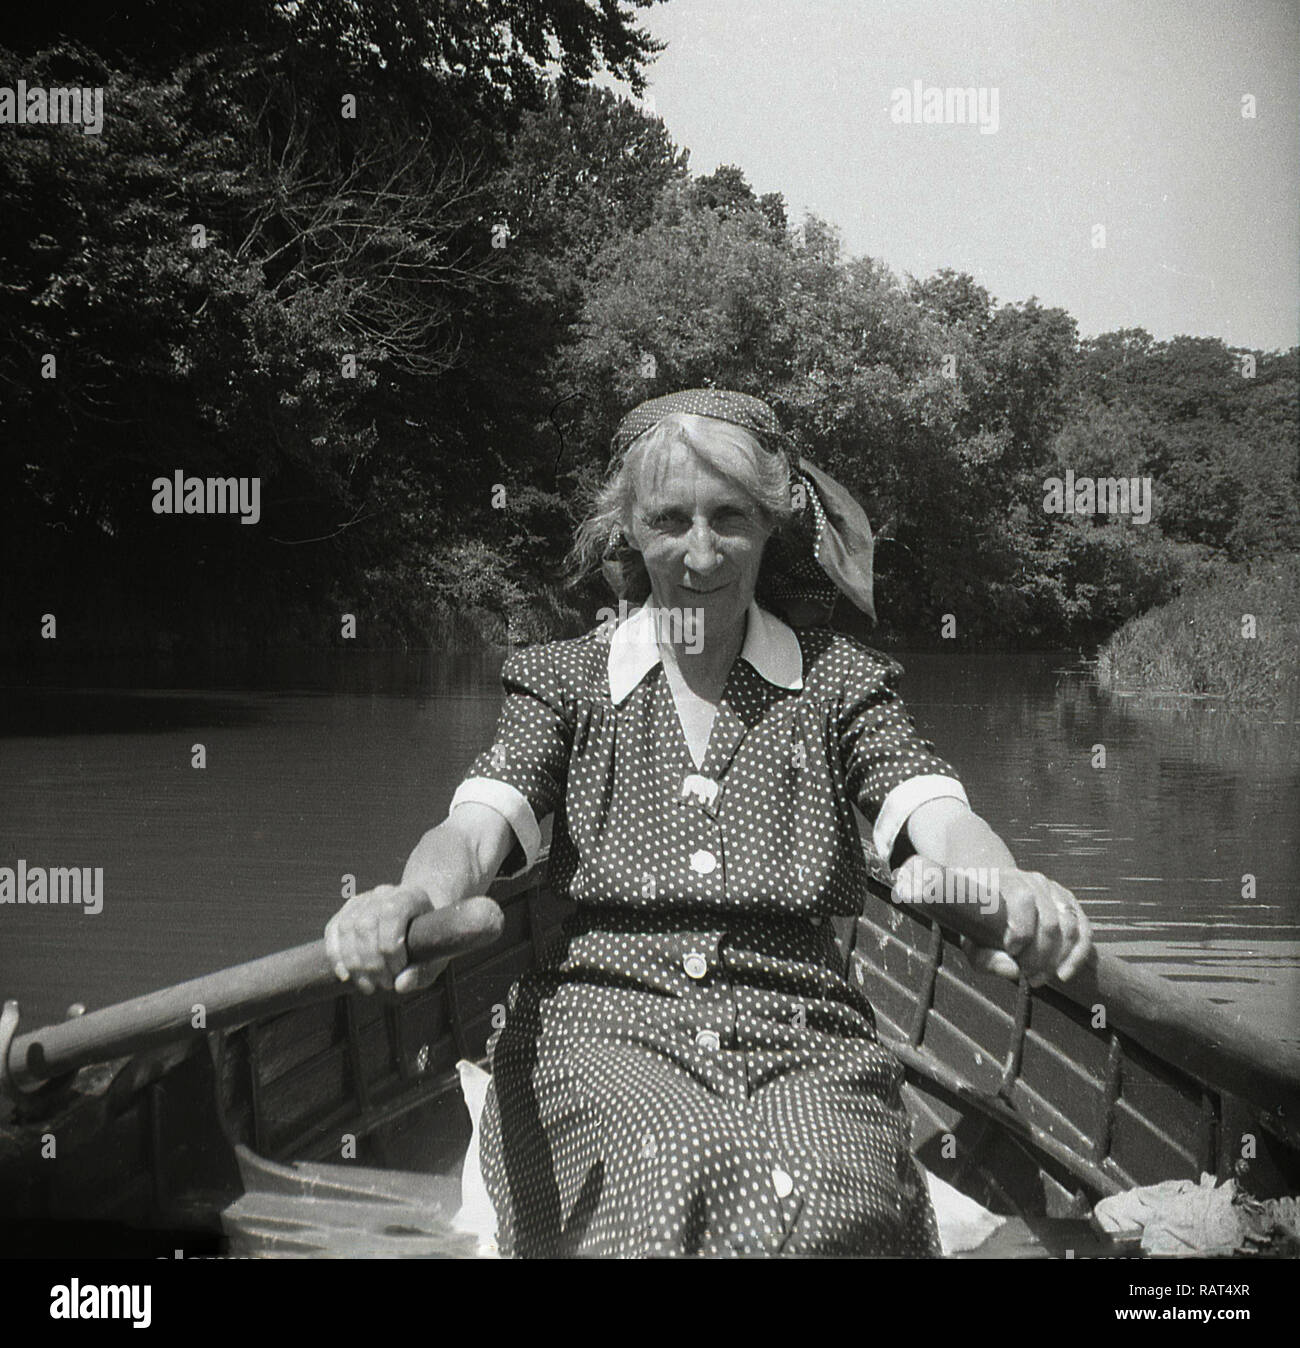 1950, historische, eine Dame mittleren Alters in eine gefleckte Kleid Ruder in der Hand in einem Ruderboot Rudern auf einem Fluss an einem Sommertag, England, Großbritannien sitzen. Stockfoto